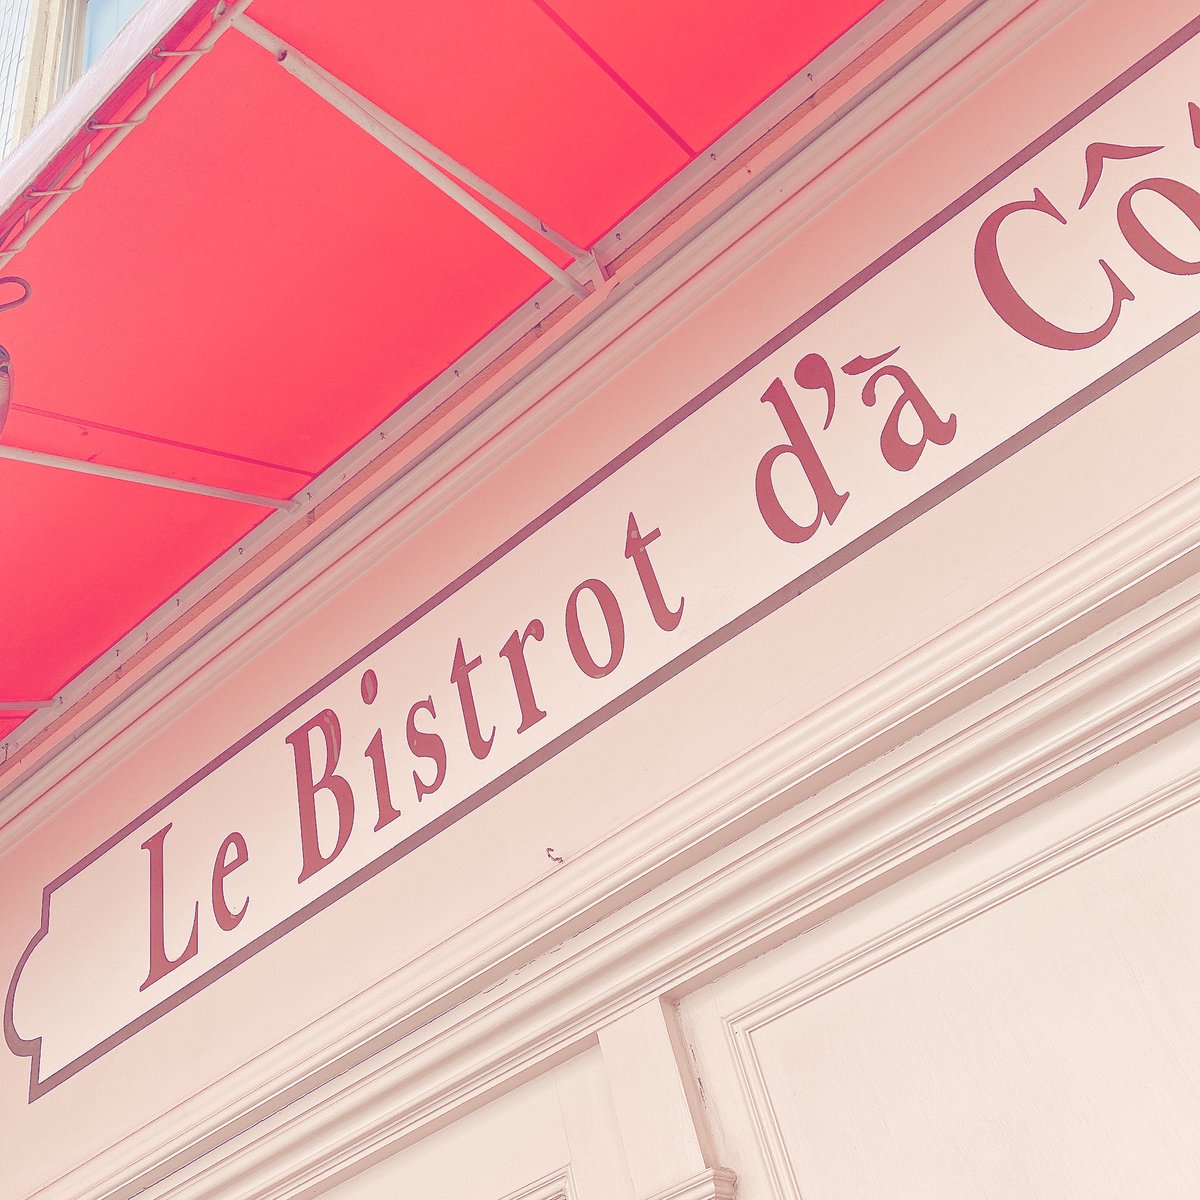 ランラン パリみたいなお店発見っ 早くフランスへ旅行 行けるようになりたいなぁ I Found The Shop Like A Paris Paris Tokyo 大人可愛い Bistro Restaurant Cafe Walking 散歩 カフェ好きな人と繋がりたい カフェ France フランス